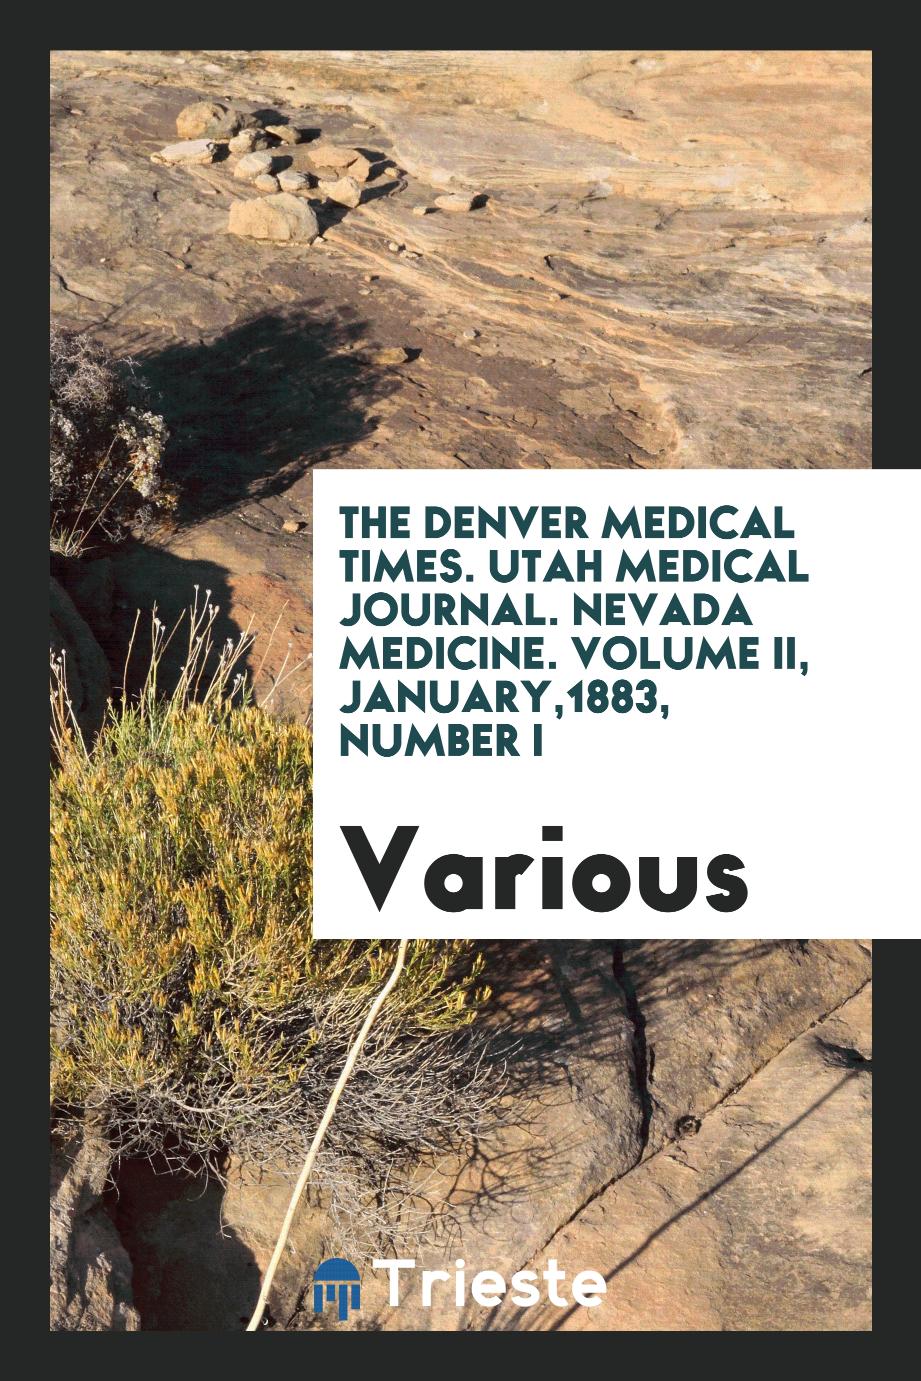 The Denver medical times. Utah medical journal. Nevada medicine. Volume II, January,1883, Number I